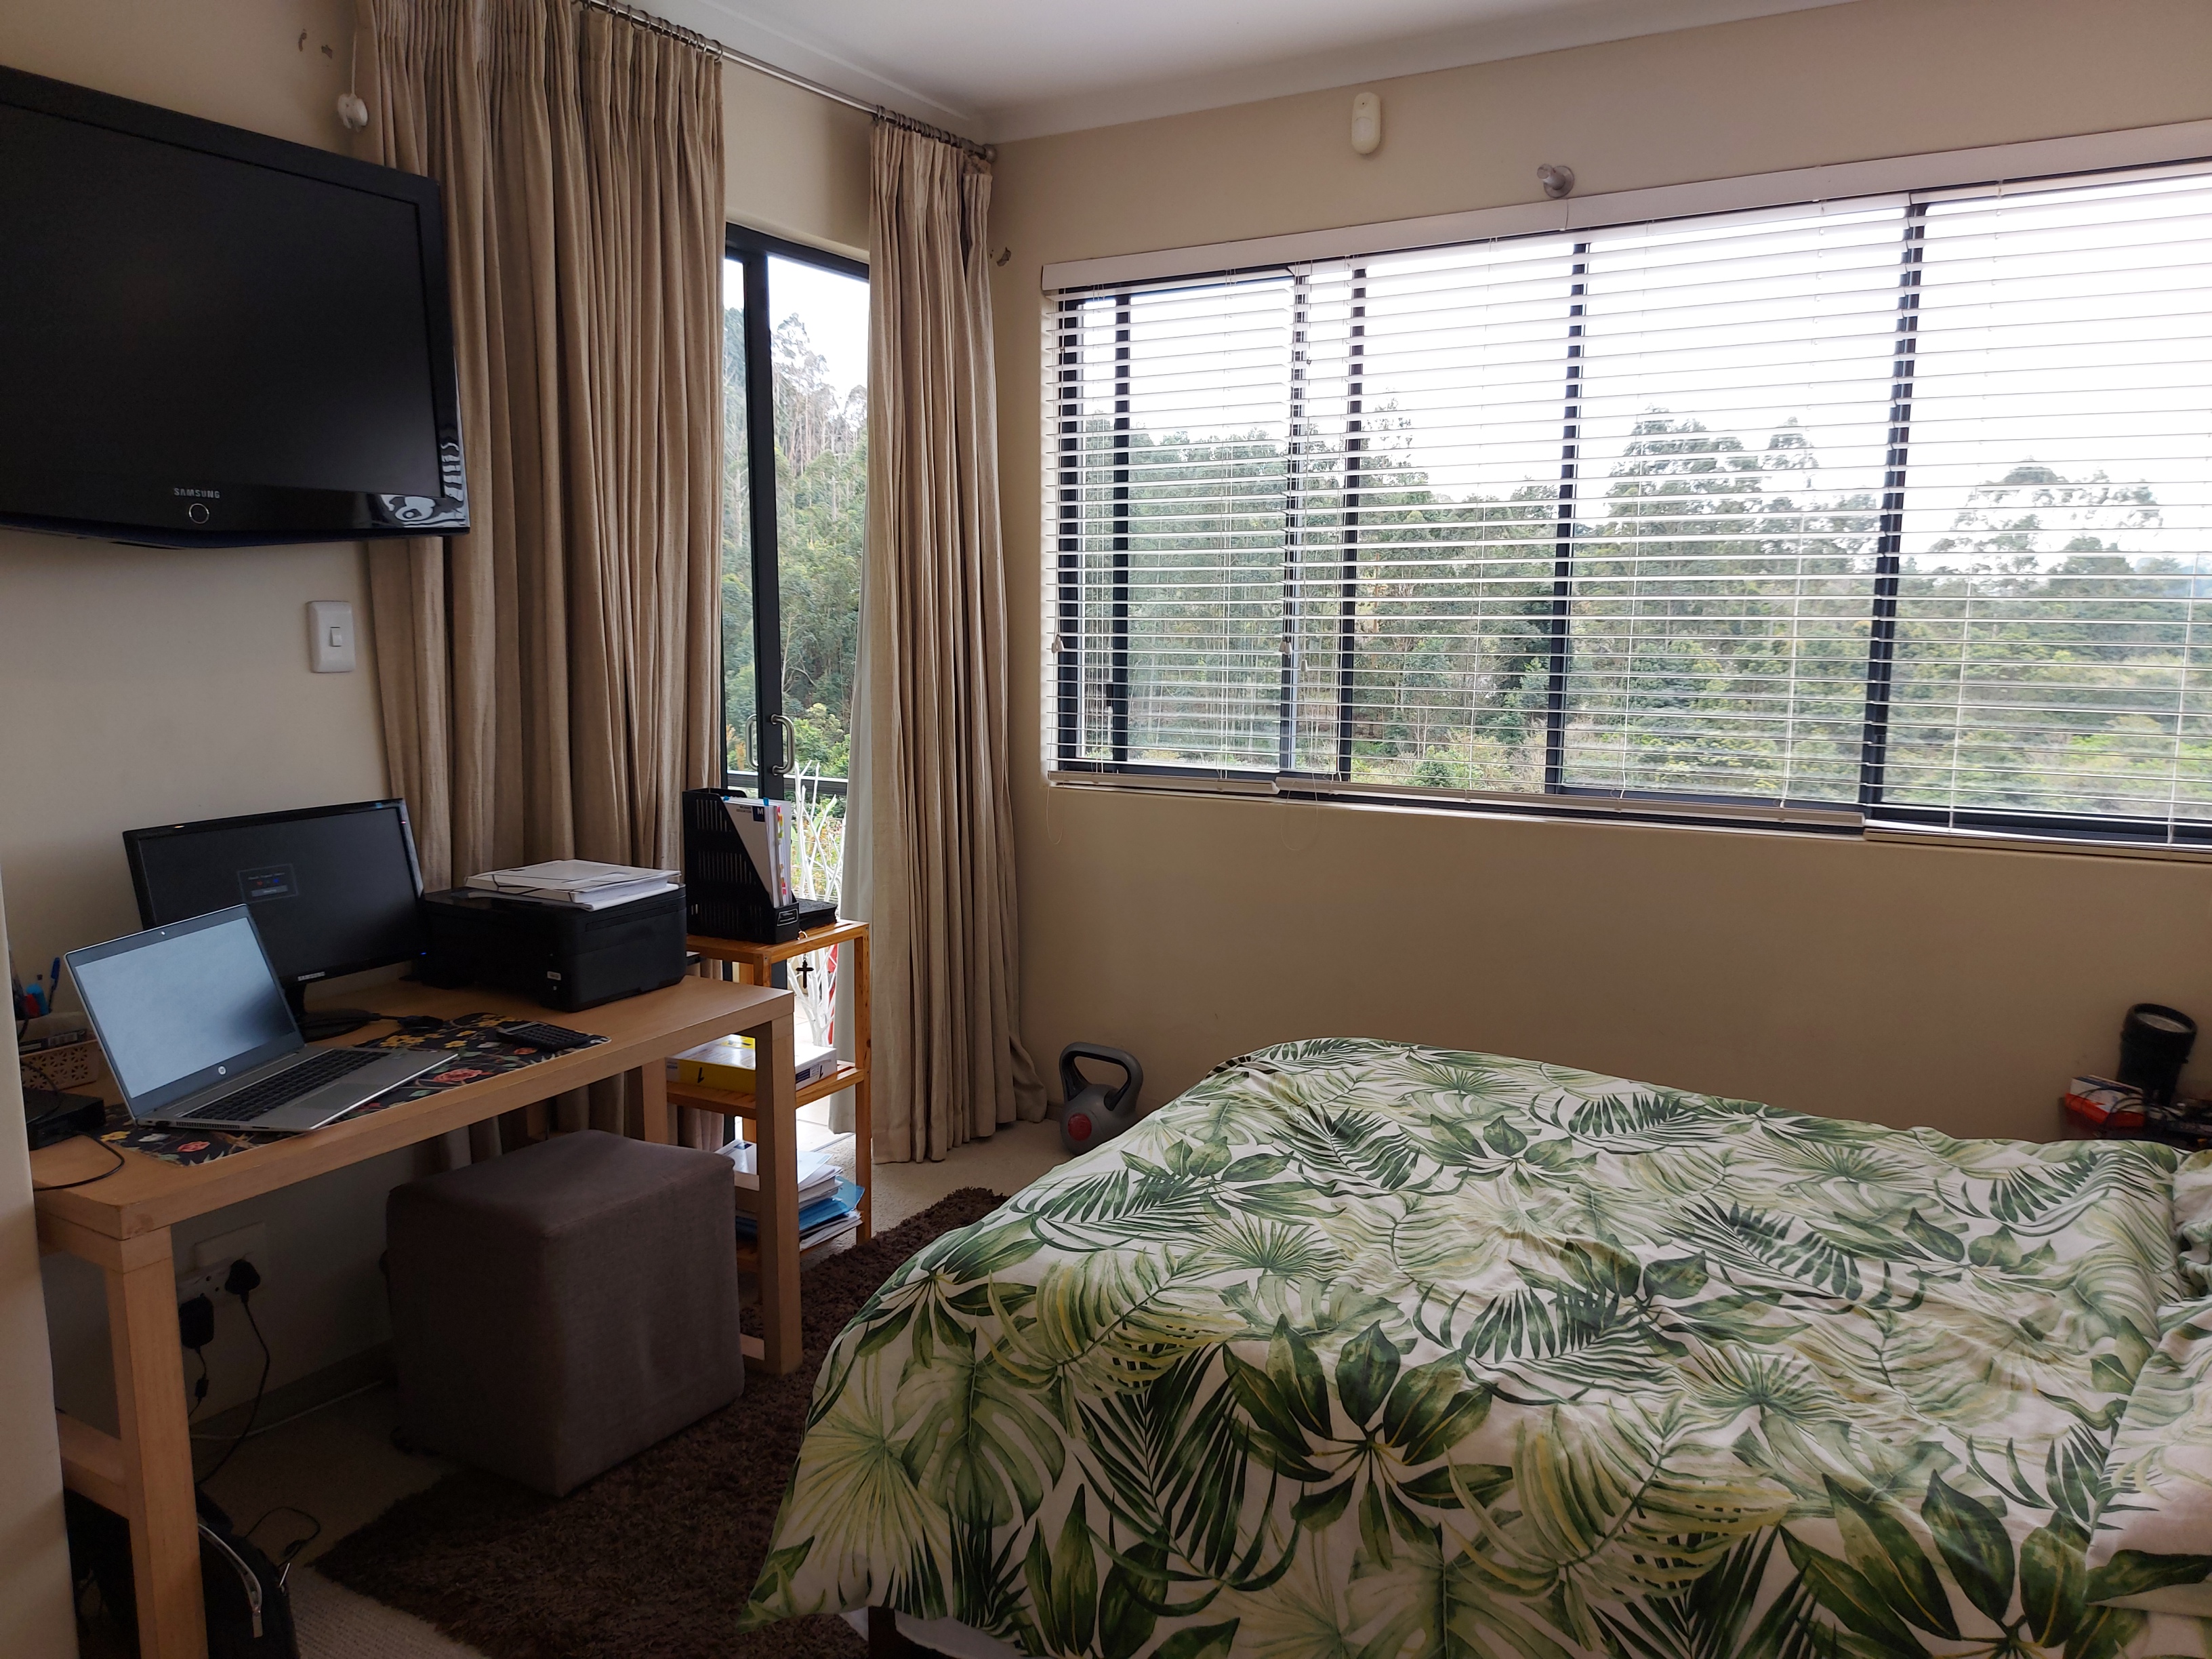 To Let 3 Bedroom Property for Rent in Hillcrest Central KwaZulu-Natal